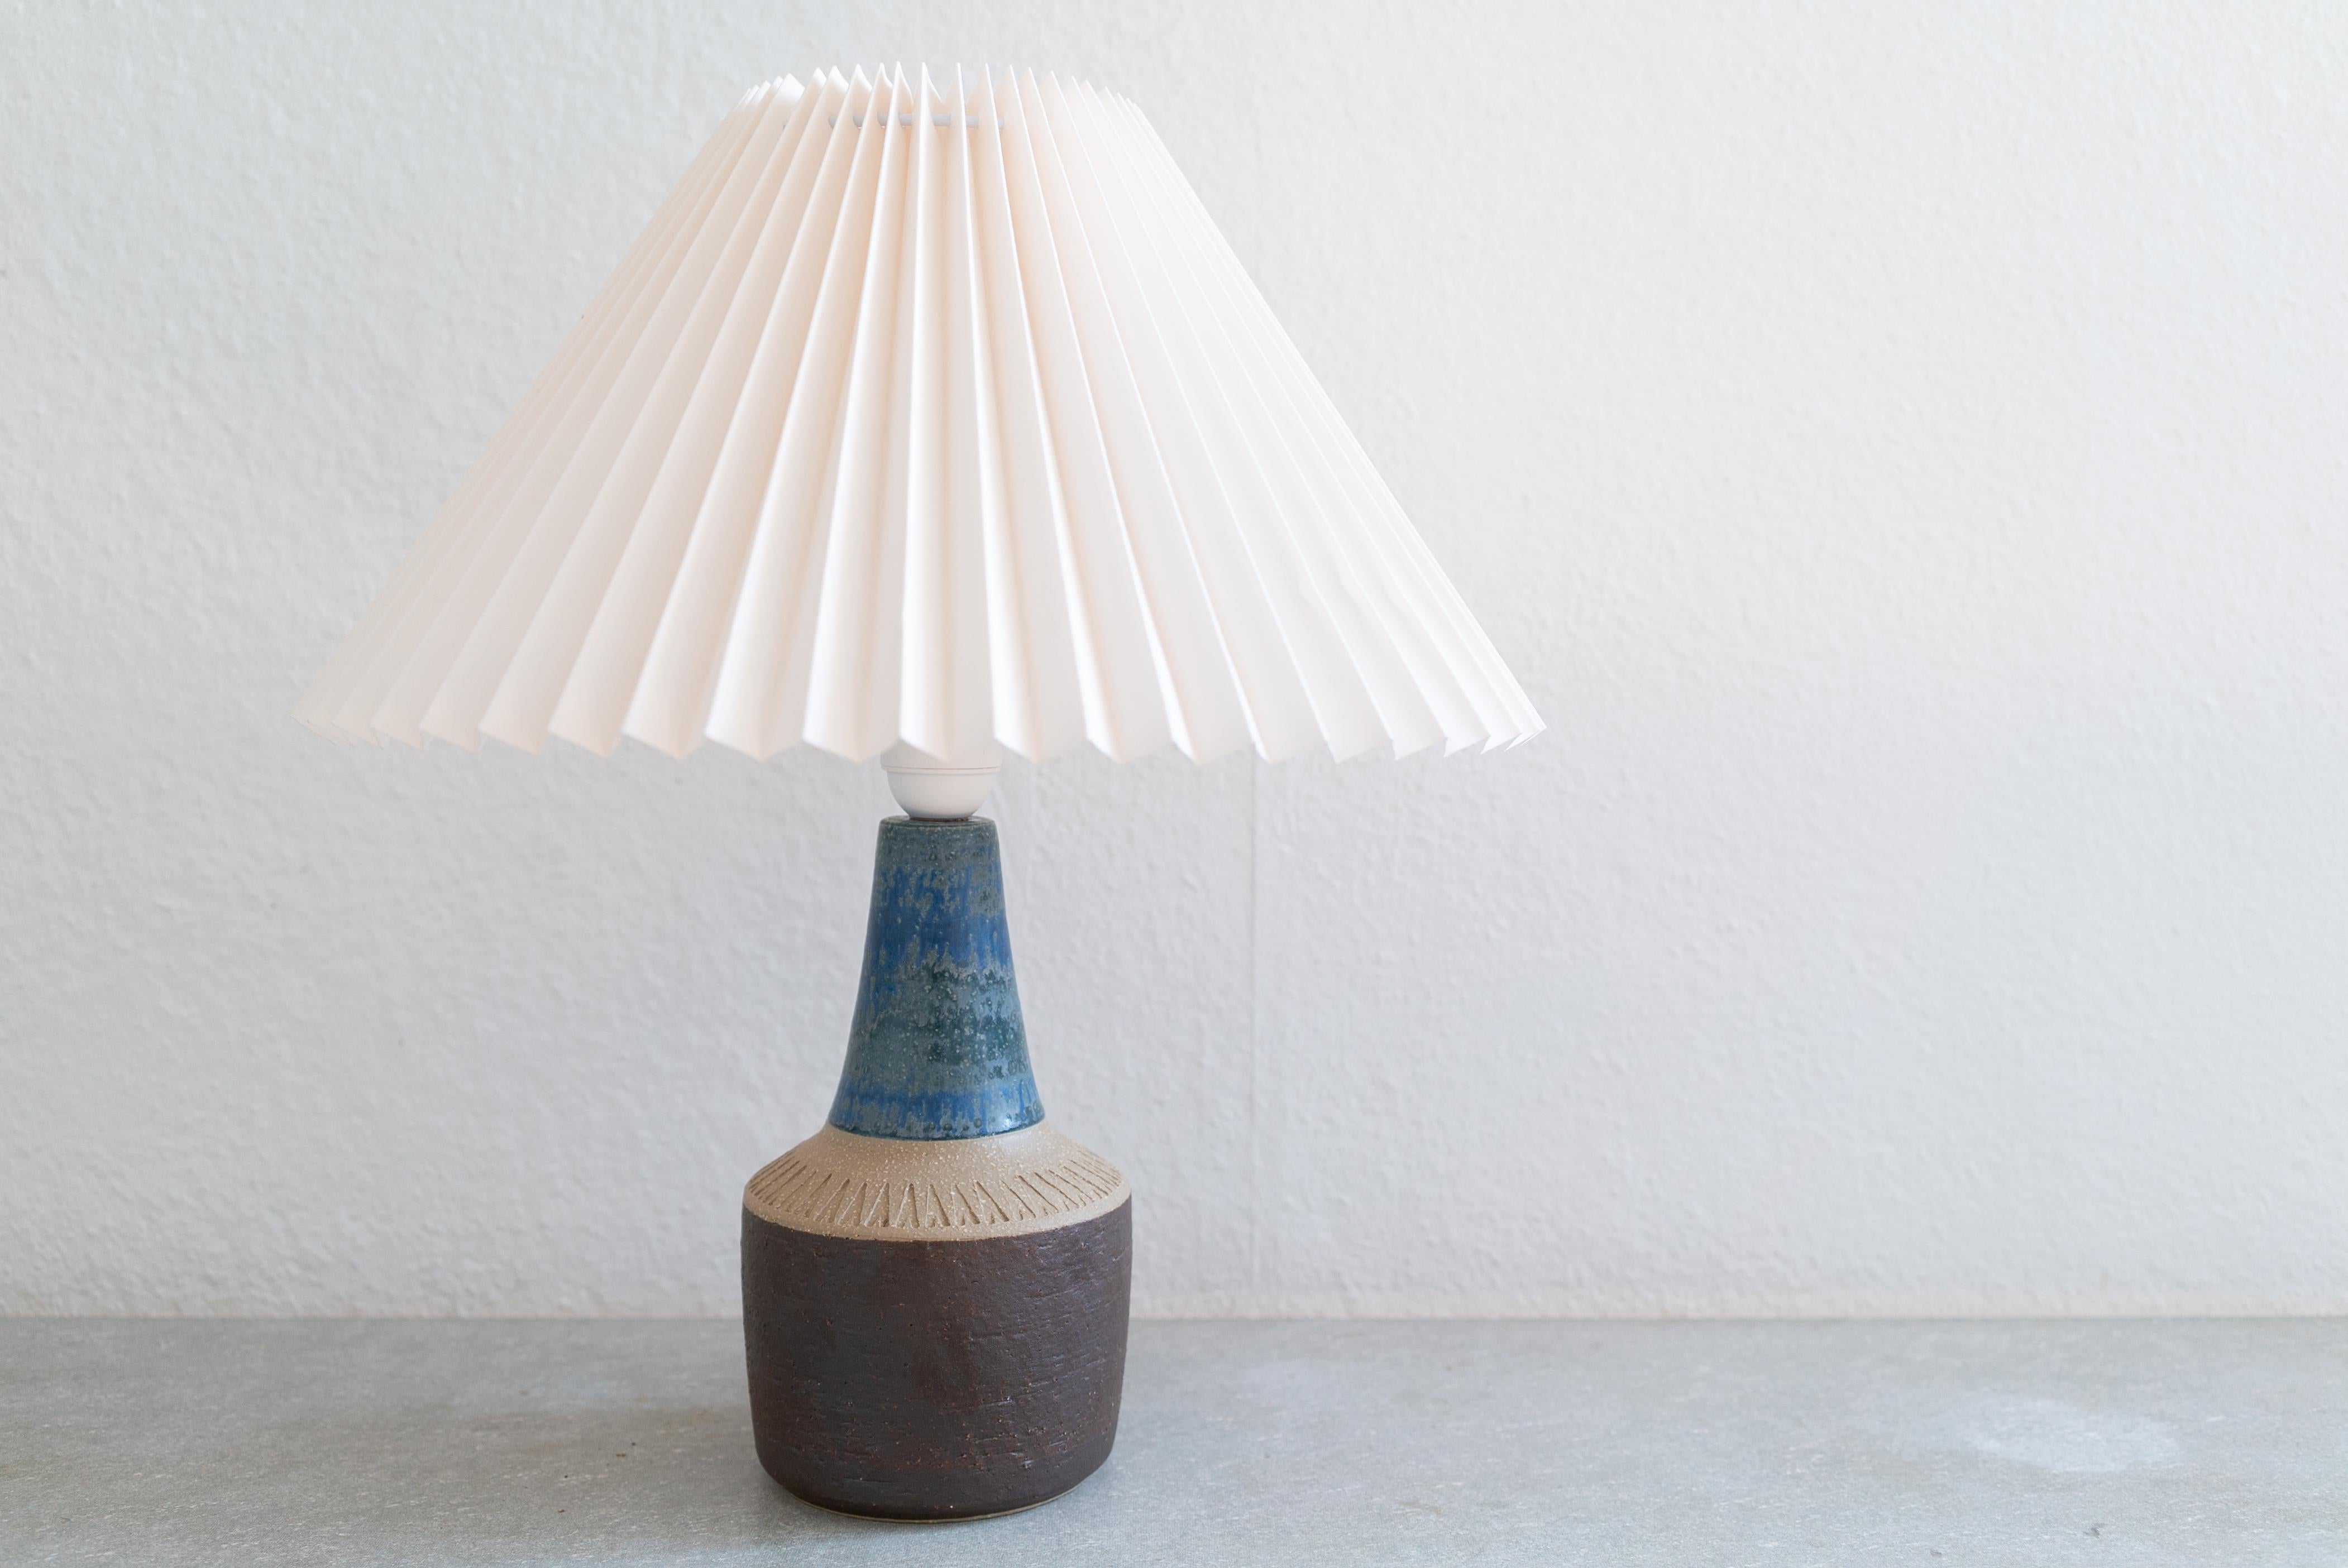 Lampe de table en grès fabriquée à la main par Einar Johansen pour Danish Søholm, situé sur l'île de Bornholm au Danemark, dans les années 1960.

Estampillé et signé sur la base.

Vendu sans abat-jour. La hauteur comprend la douille. Entièrement